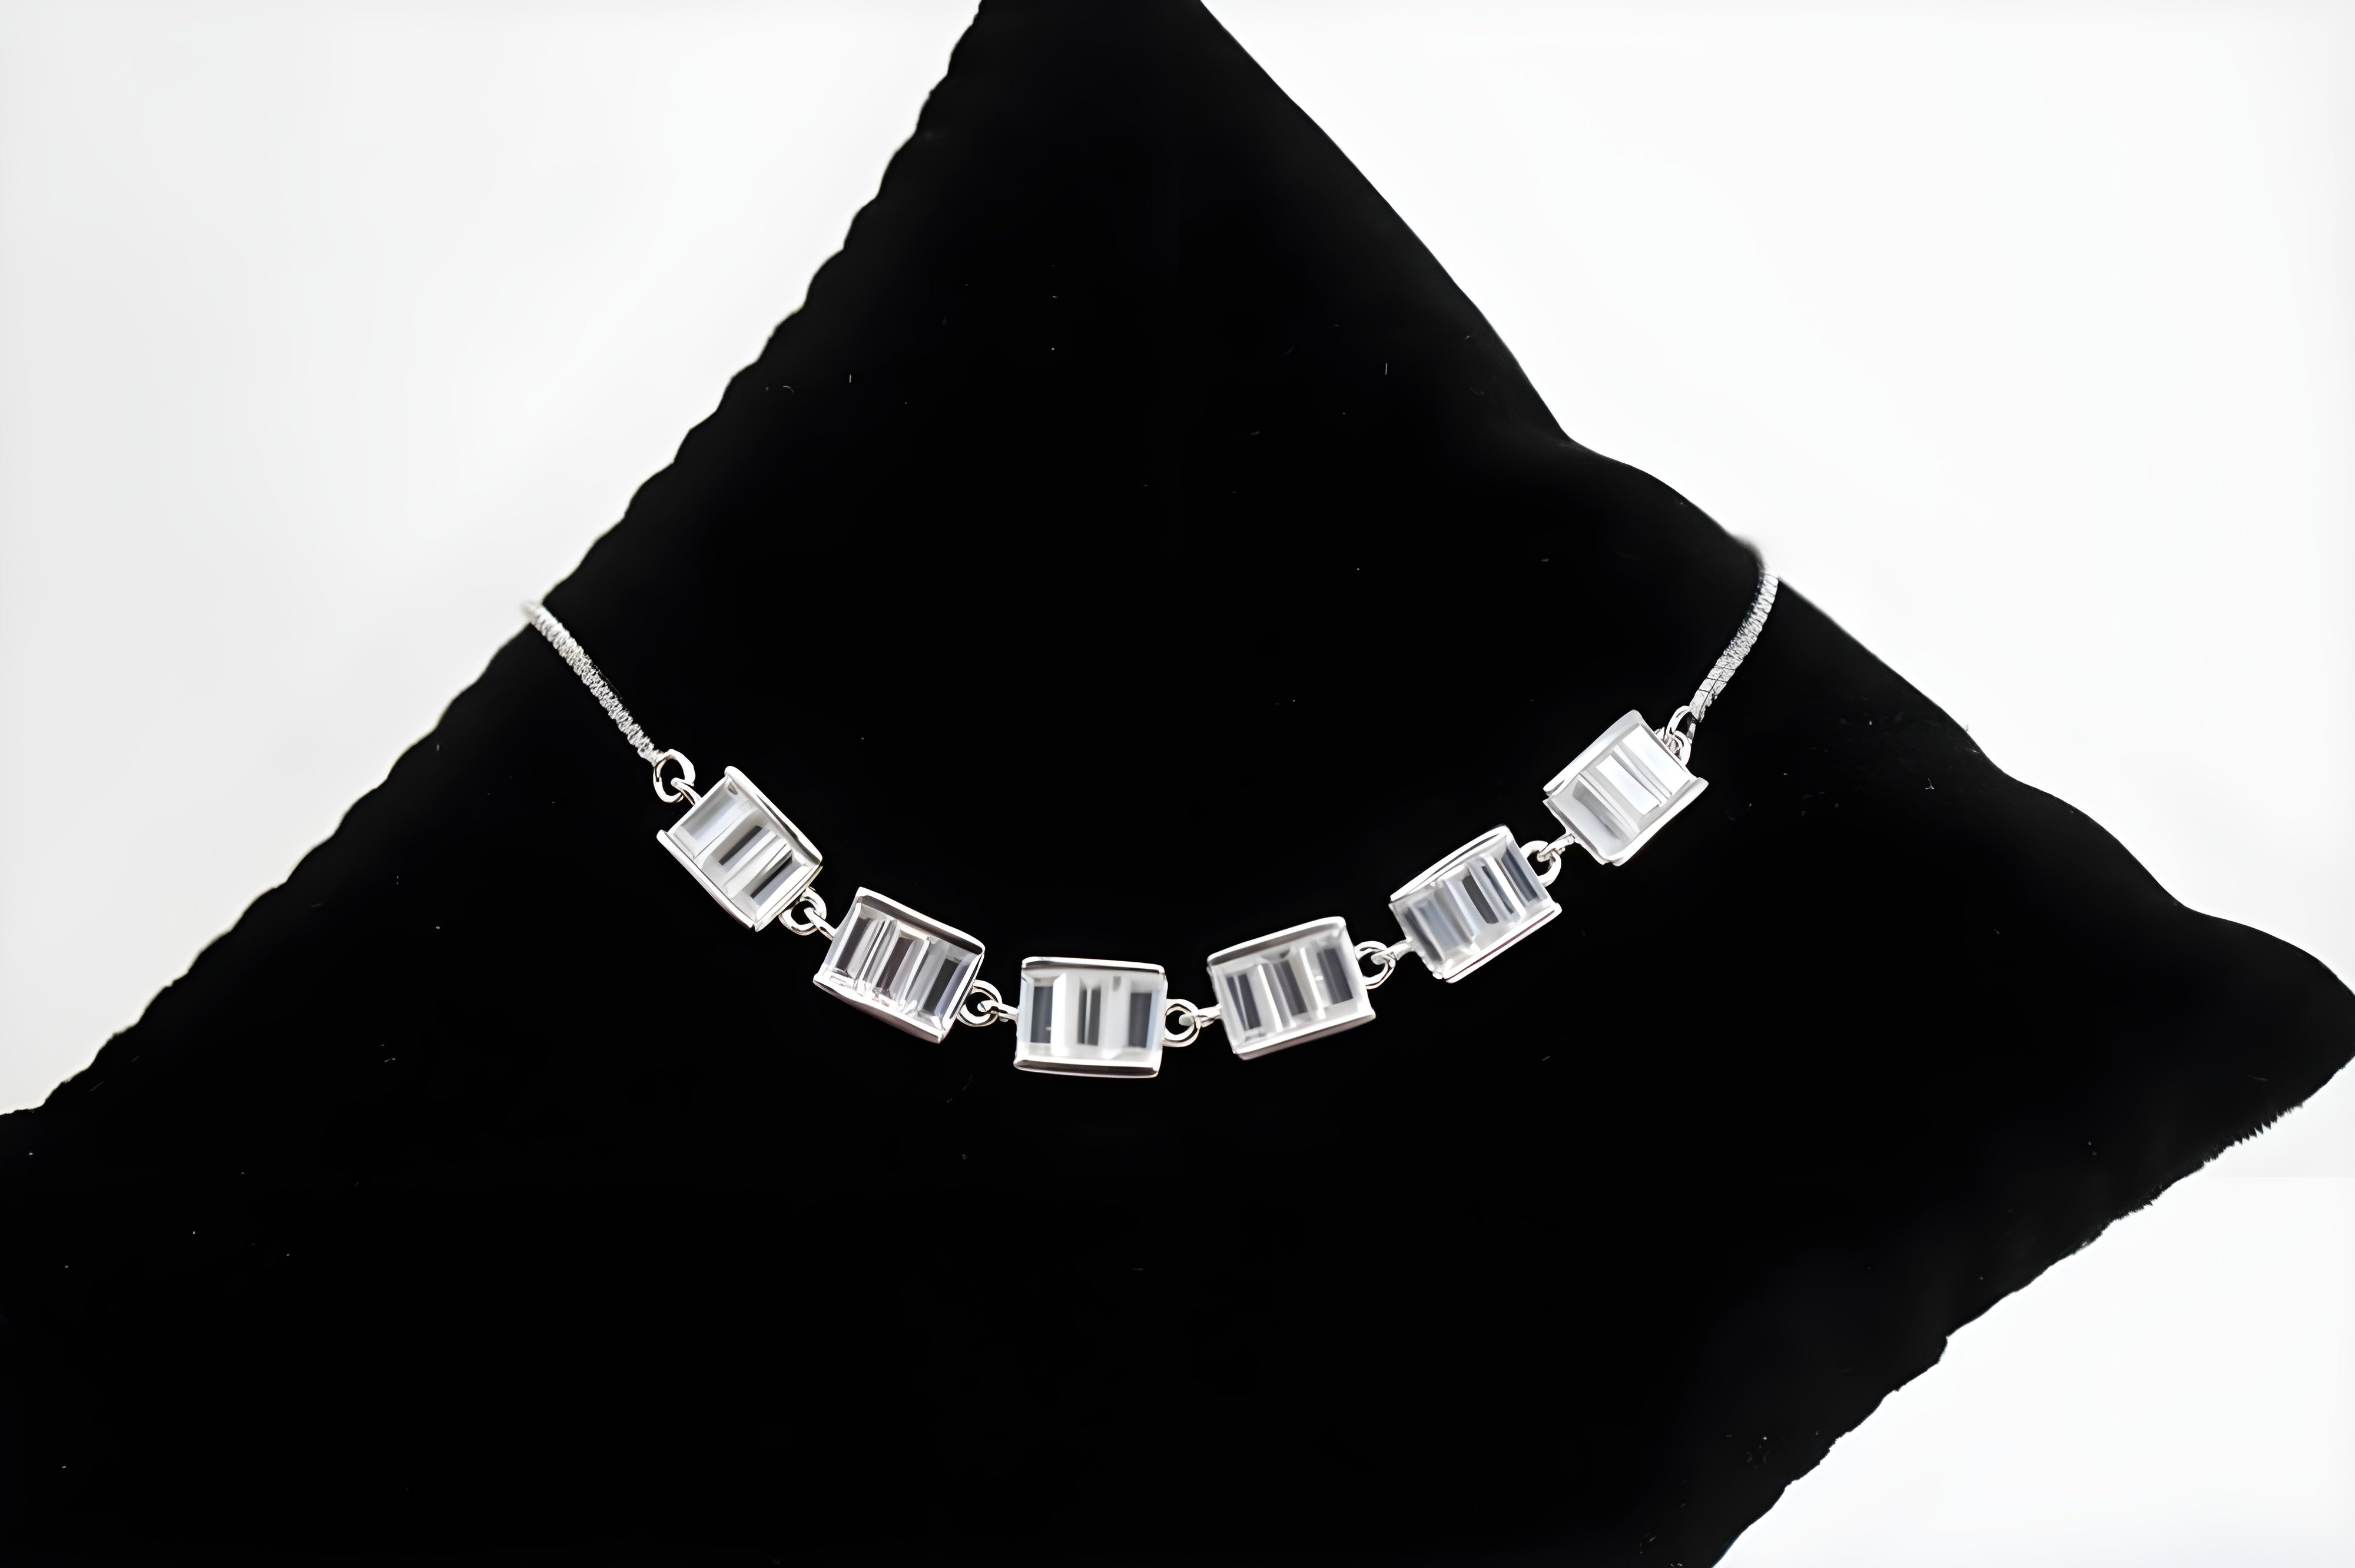 Sterling Silver Swarovski Crystal Sophisticate Classic Shimmer Bracelet